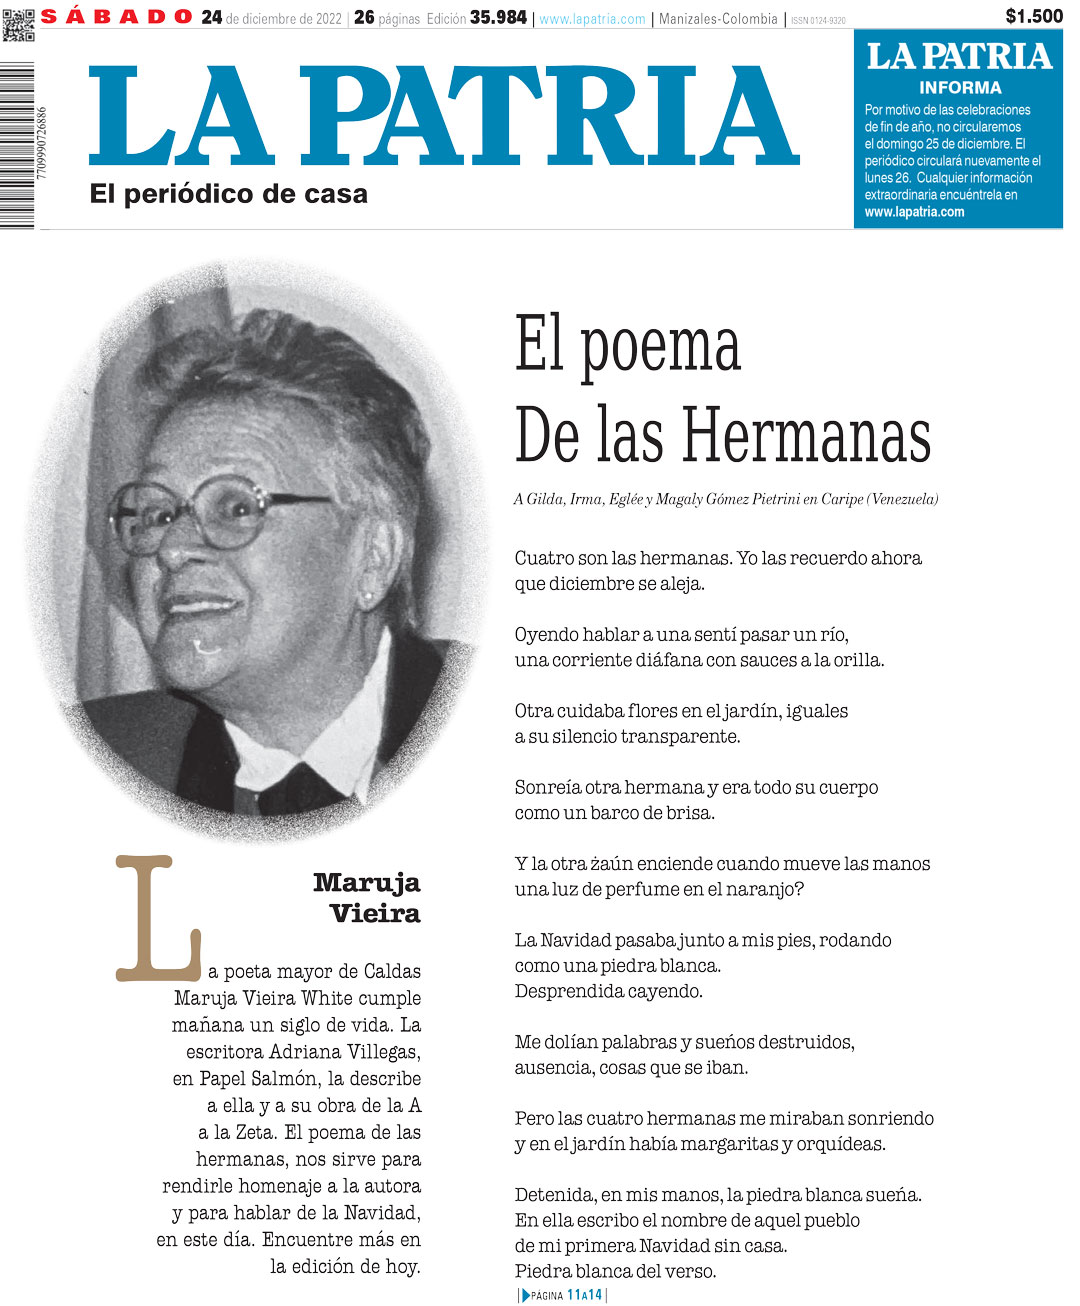 Maruja Vieira: 100 Años de la A a la Z. Papel Salmón / La Patria